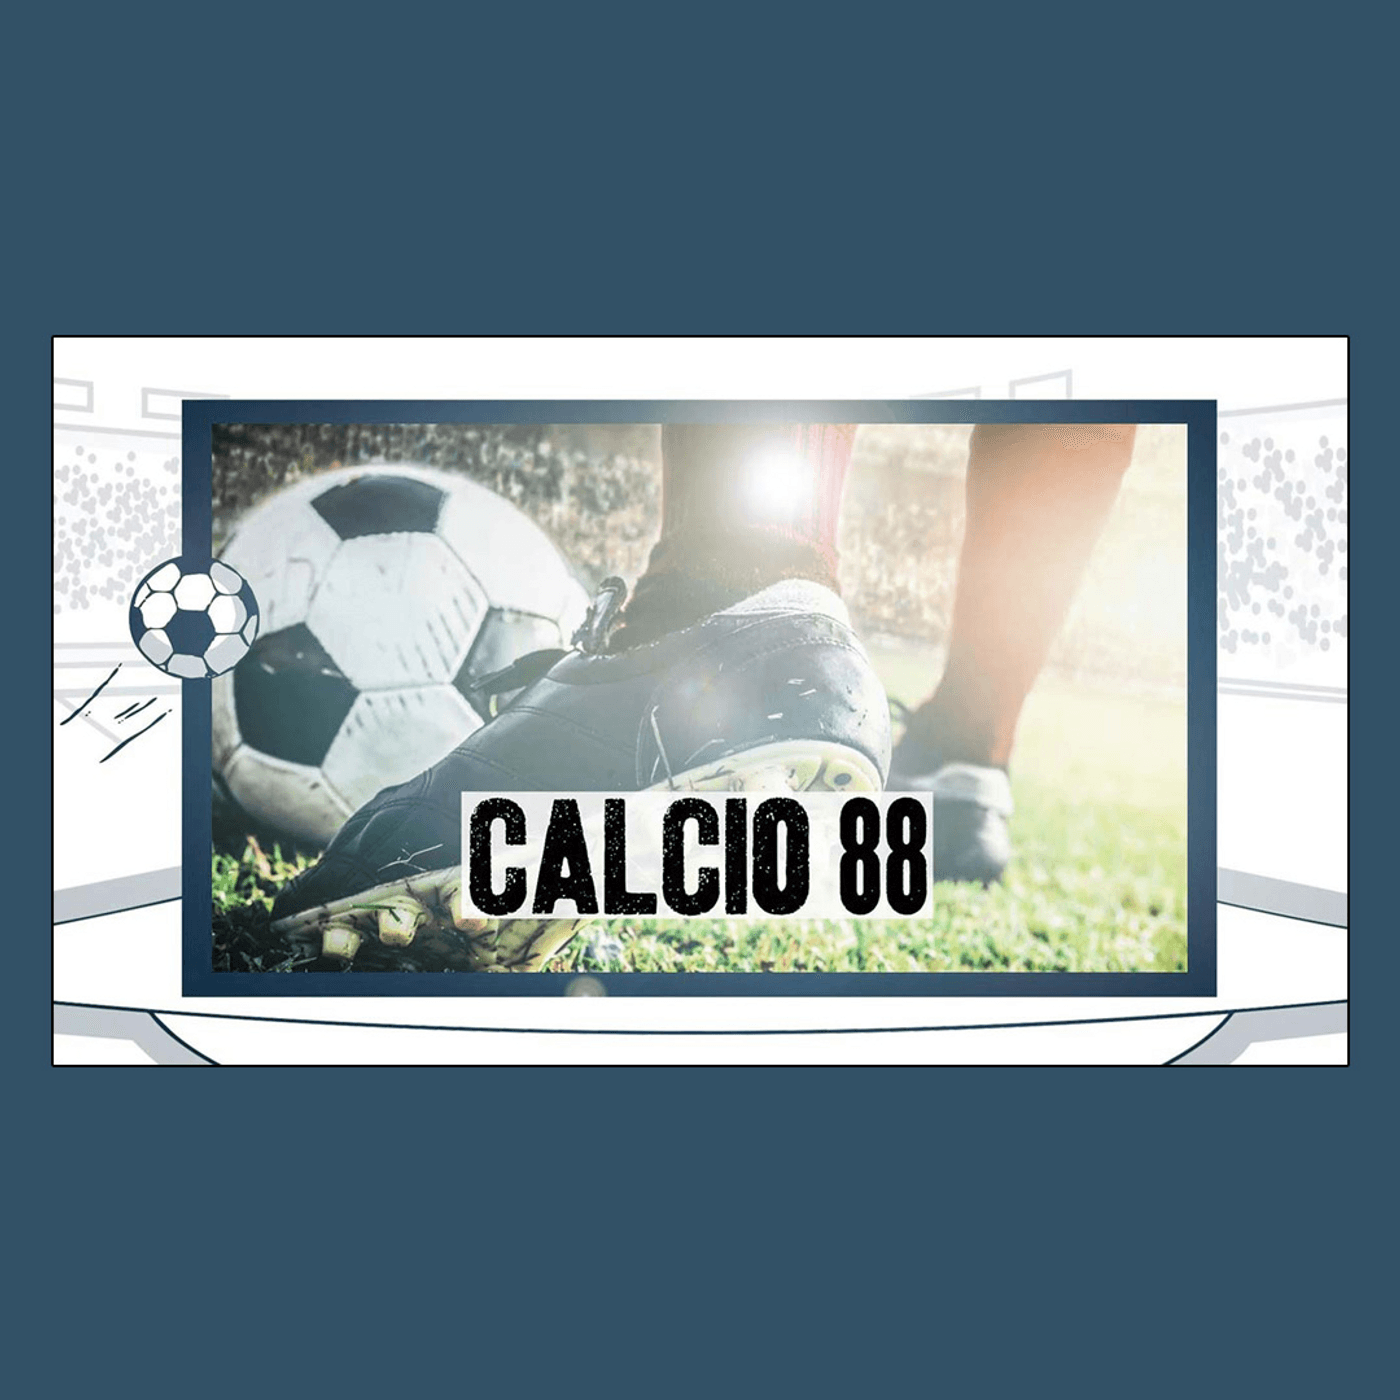 Calcio 88